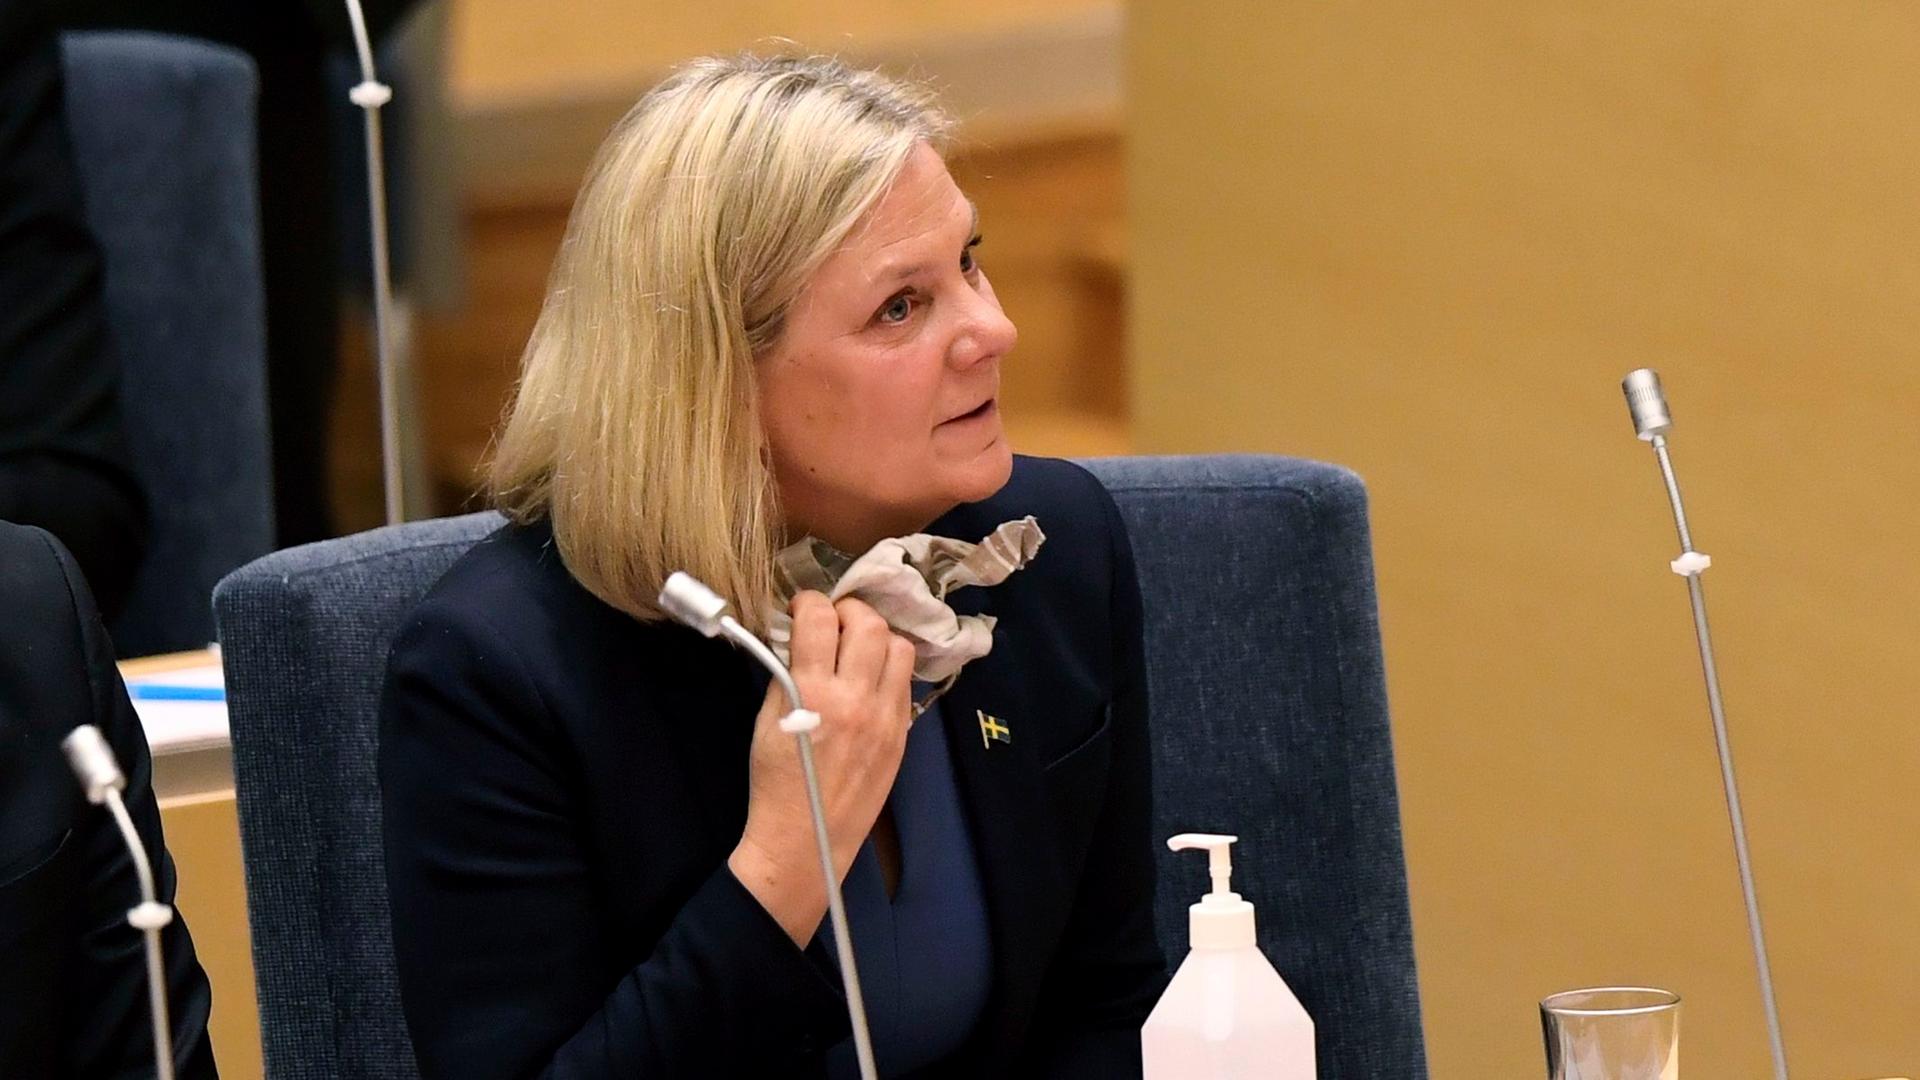 Schweden, Stockholm: Magdalena Andersson, bisherige Finanzministerin von Schweden und Vorsitzende der Sozialdemokratischen Partei, während einer Abstimmung im schwedischen Parlament Riksdagen.